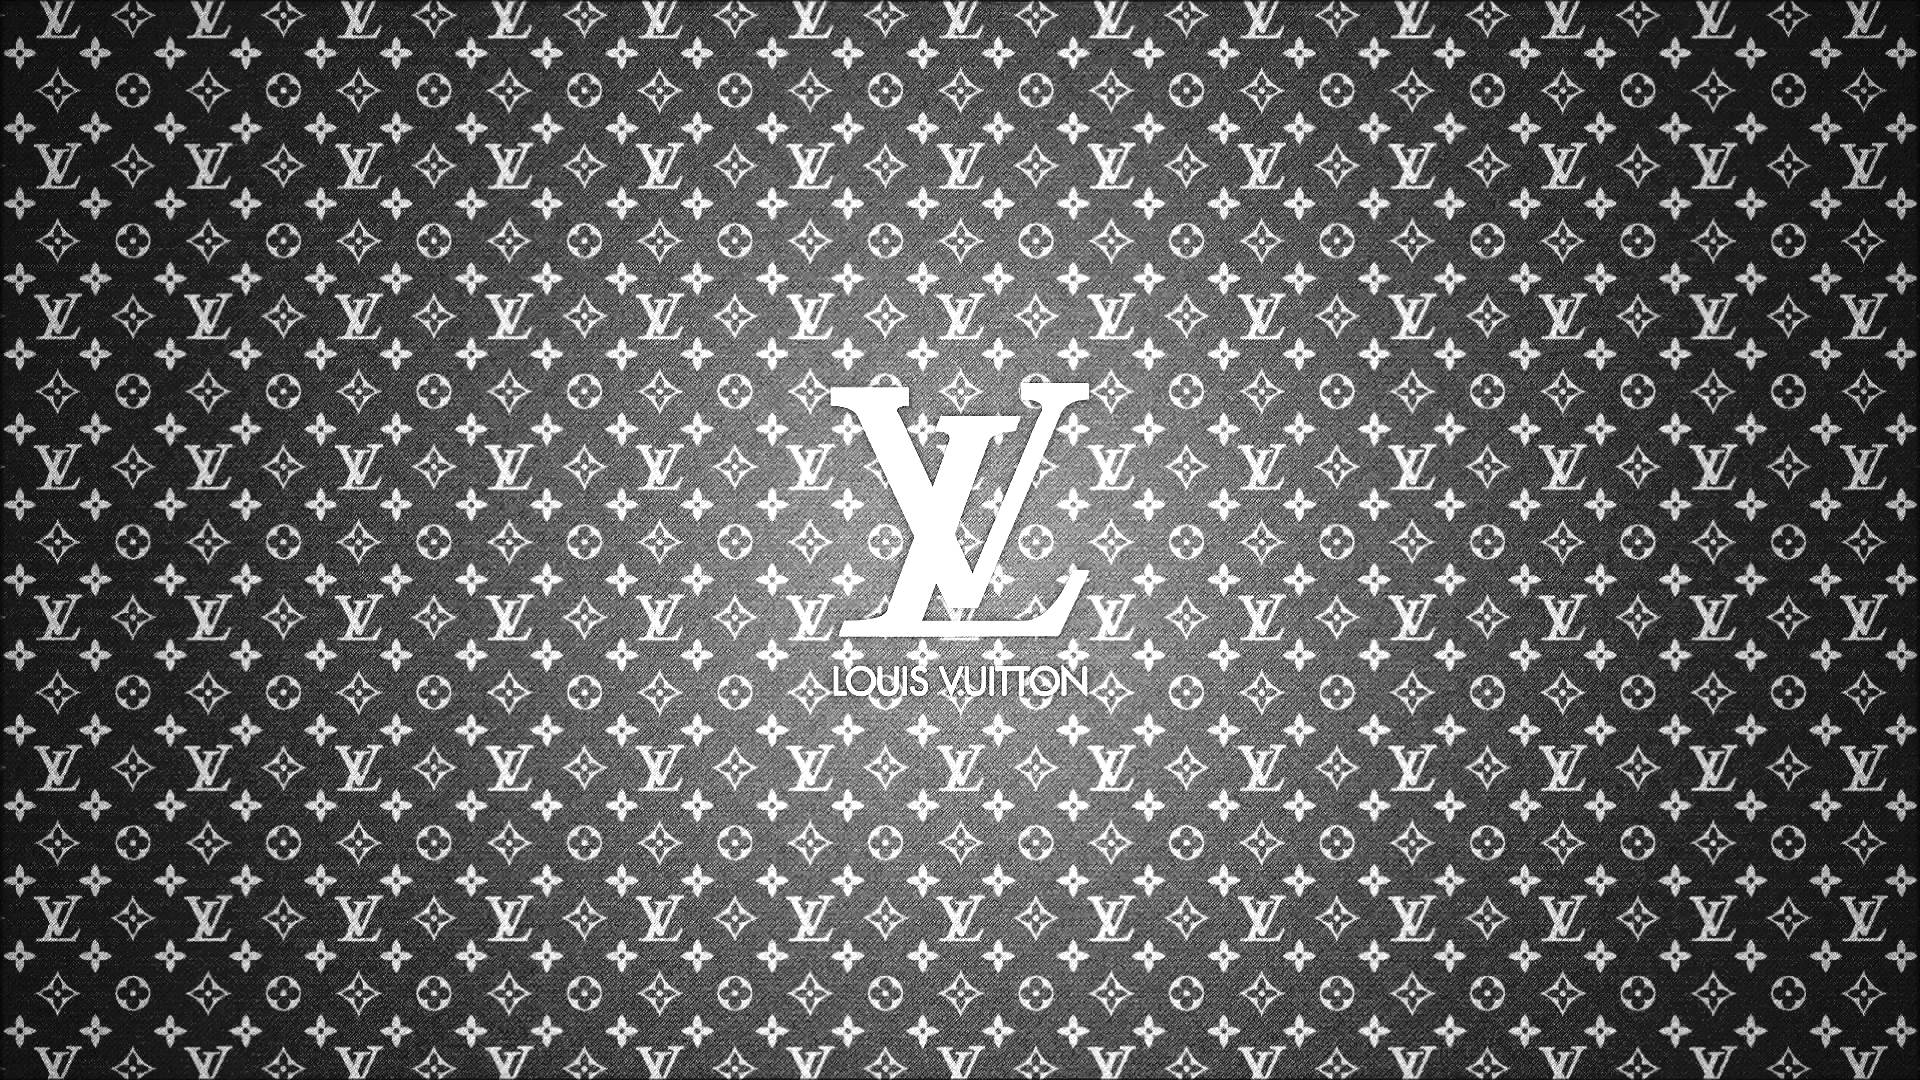 100 Cool Louis Vuitton Wallpapers  Wallpaperscom